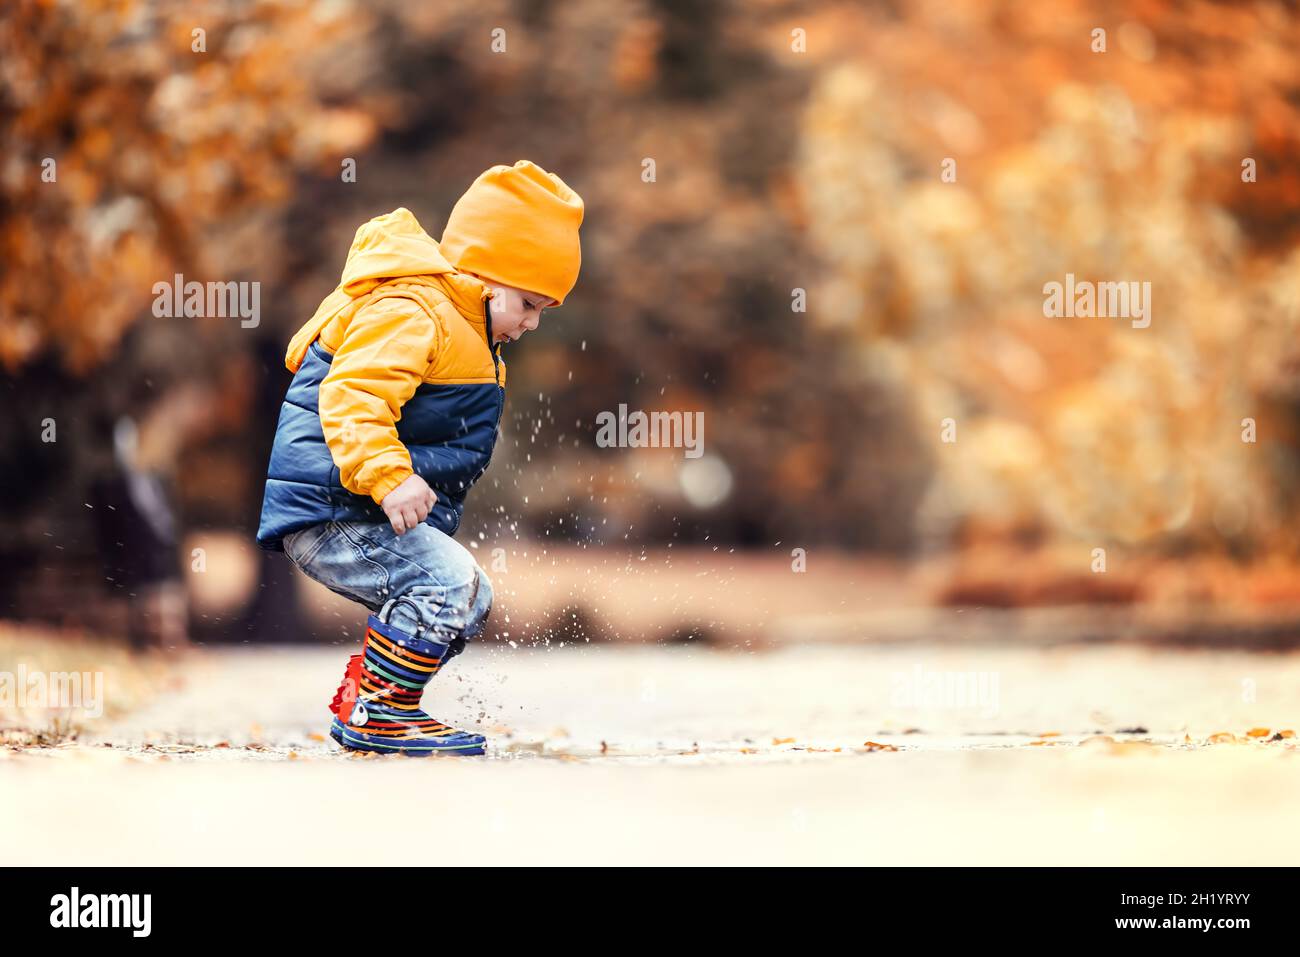 Glücklicher kleiner Junge, der im Herbstpark auf eine verregnete Pfütze springt Stockfoto